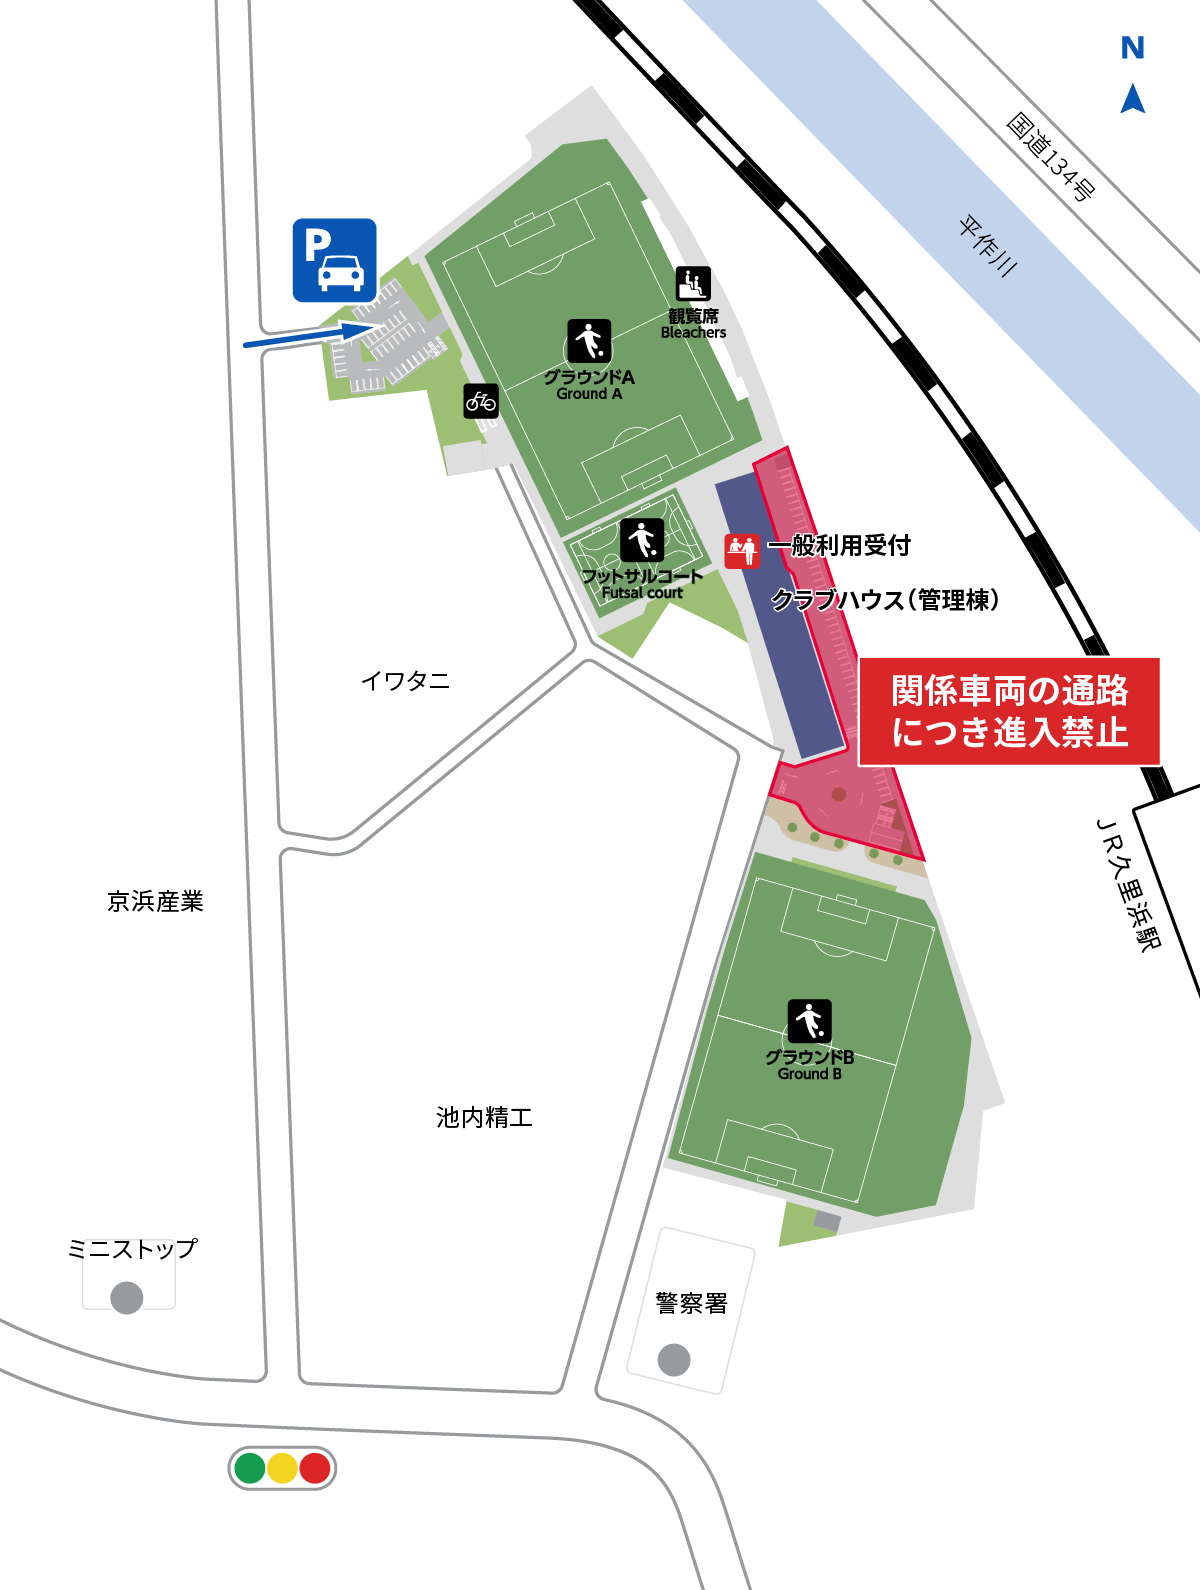 駐車場の場所と入口の地図